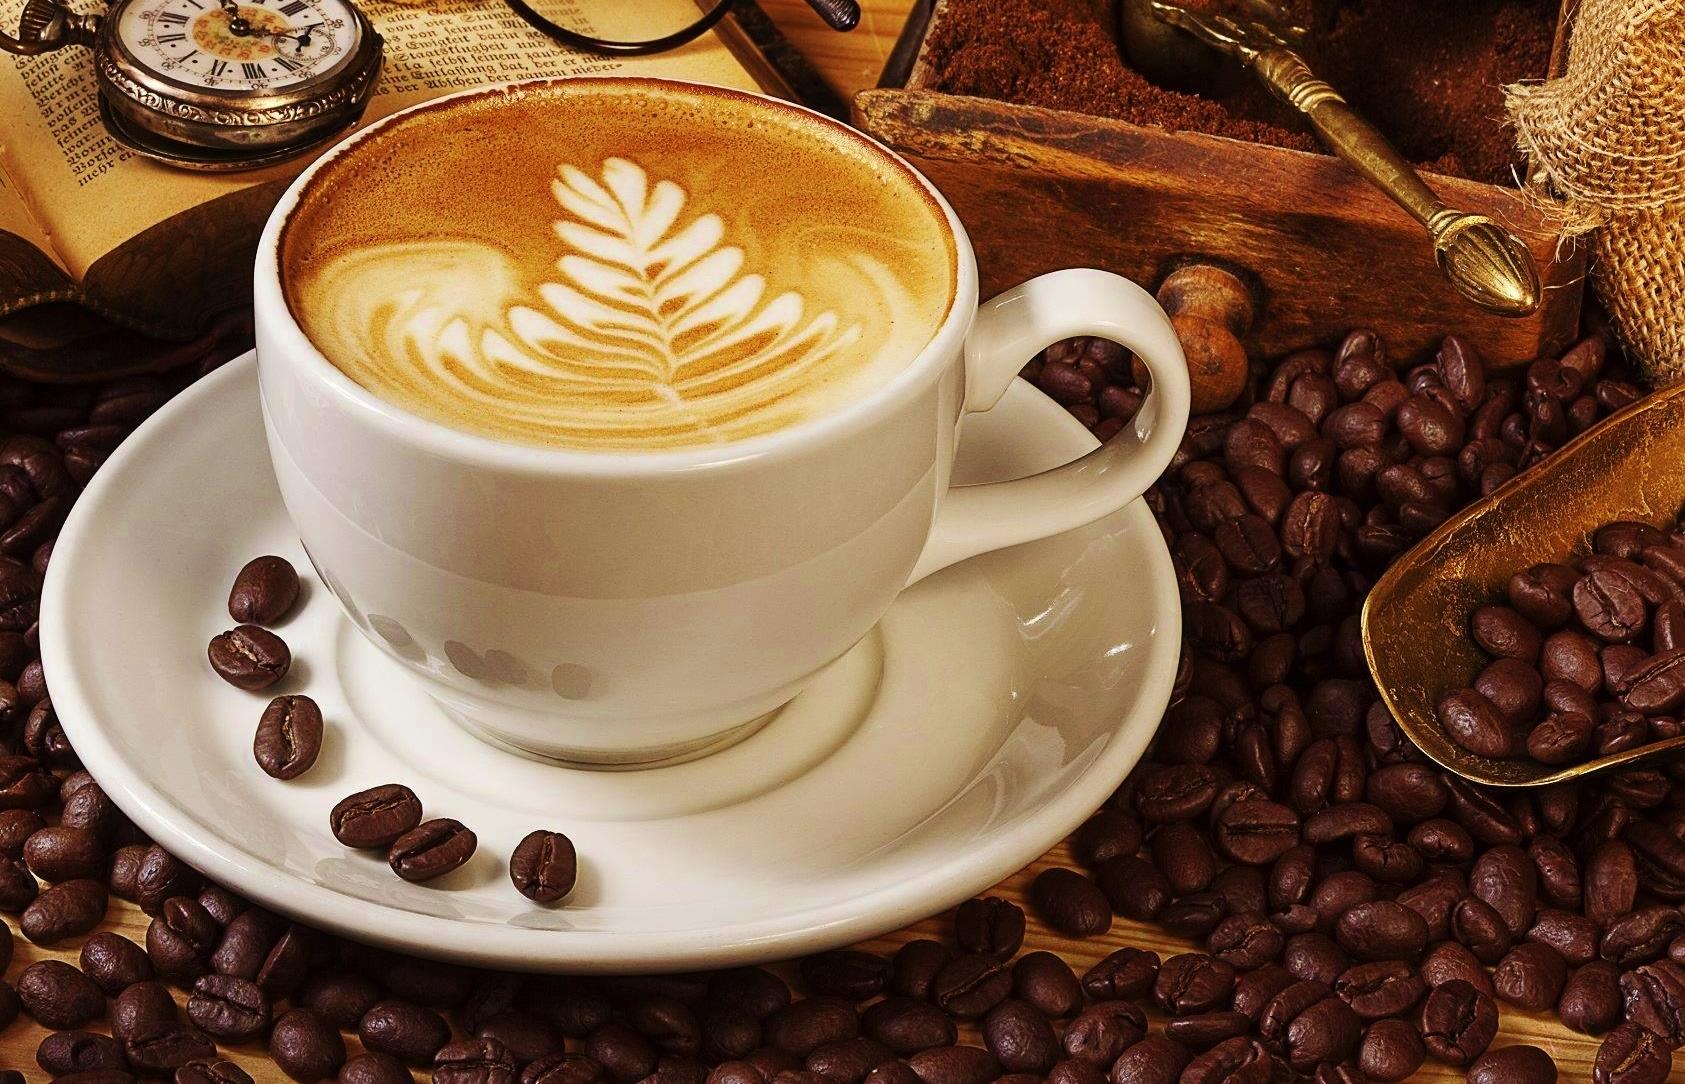 Secangkir kopi nikmat buat kamu para coffee addict